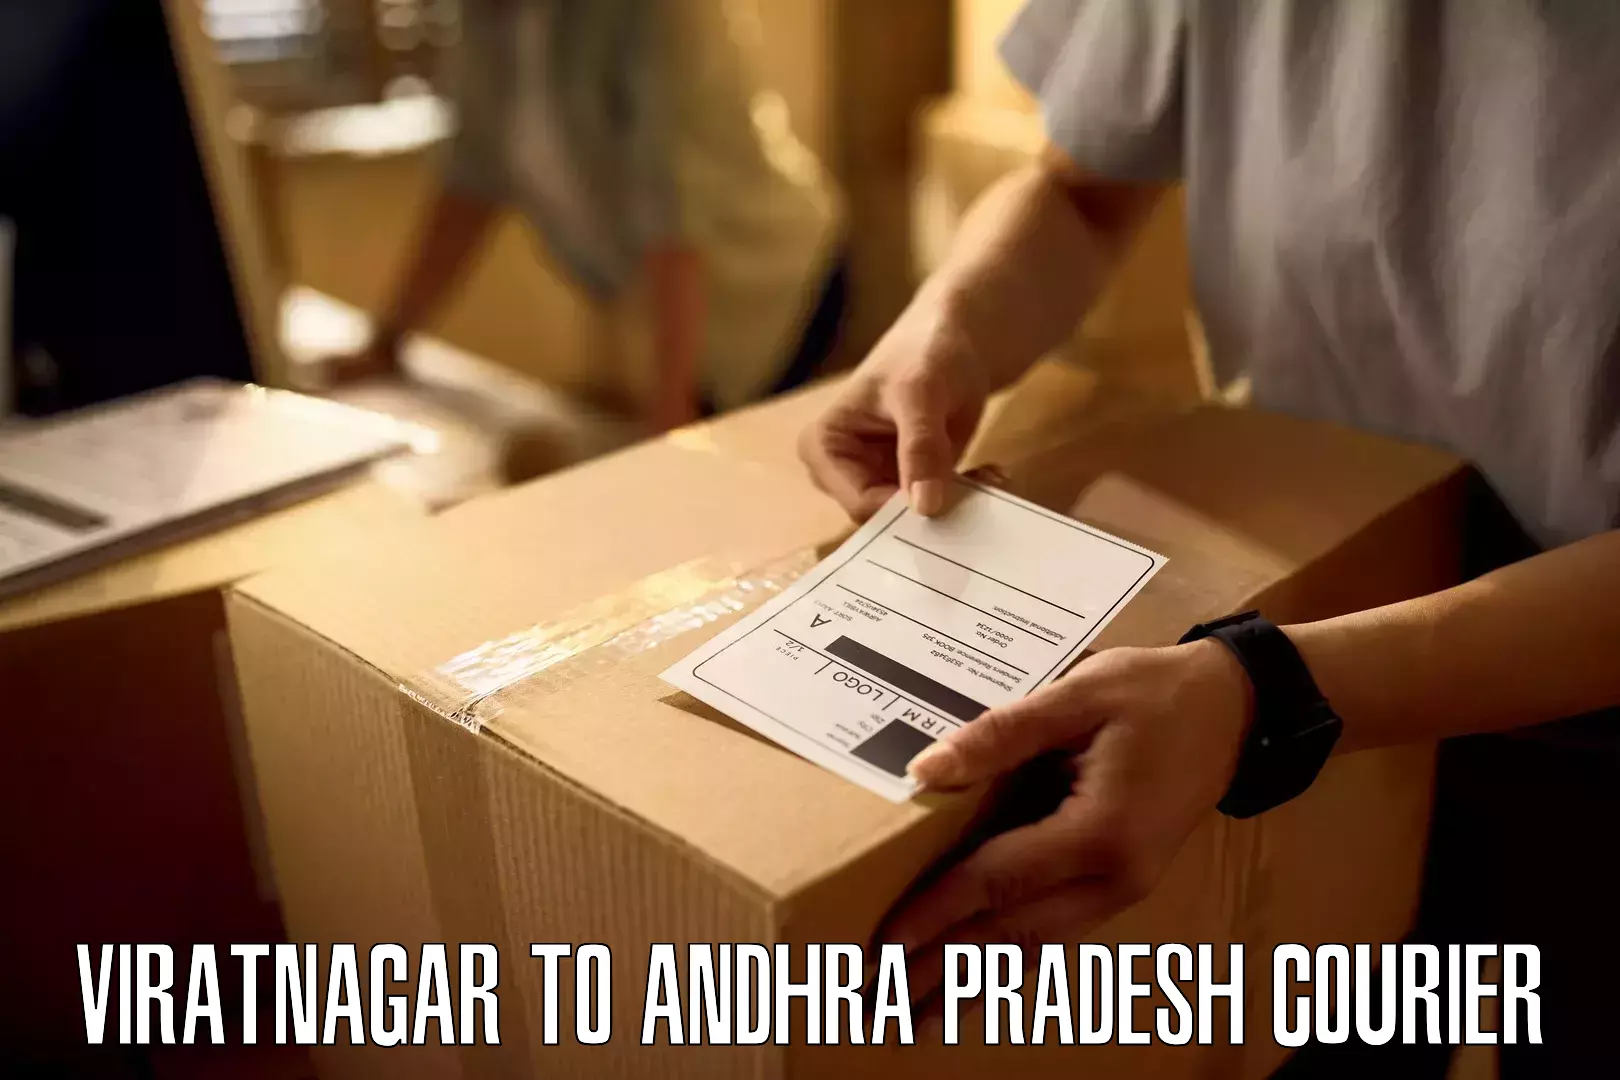 Local delivery service Viratnagar to Martur